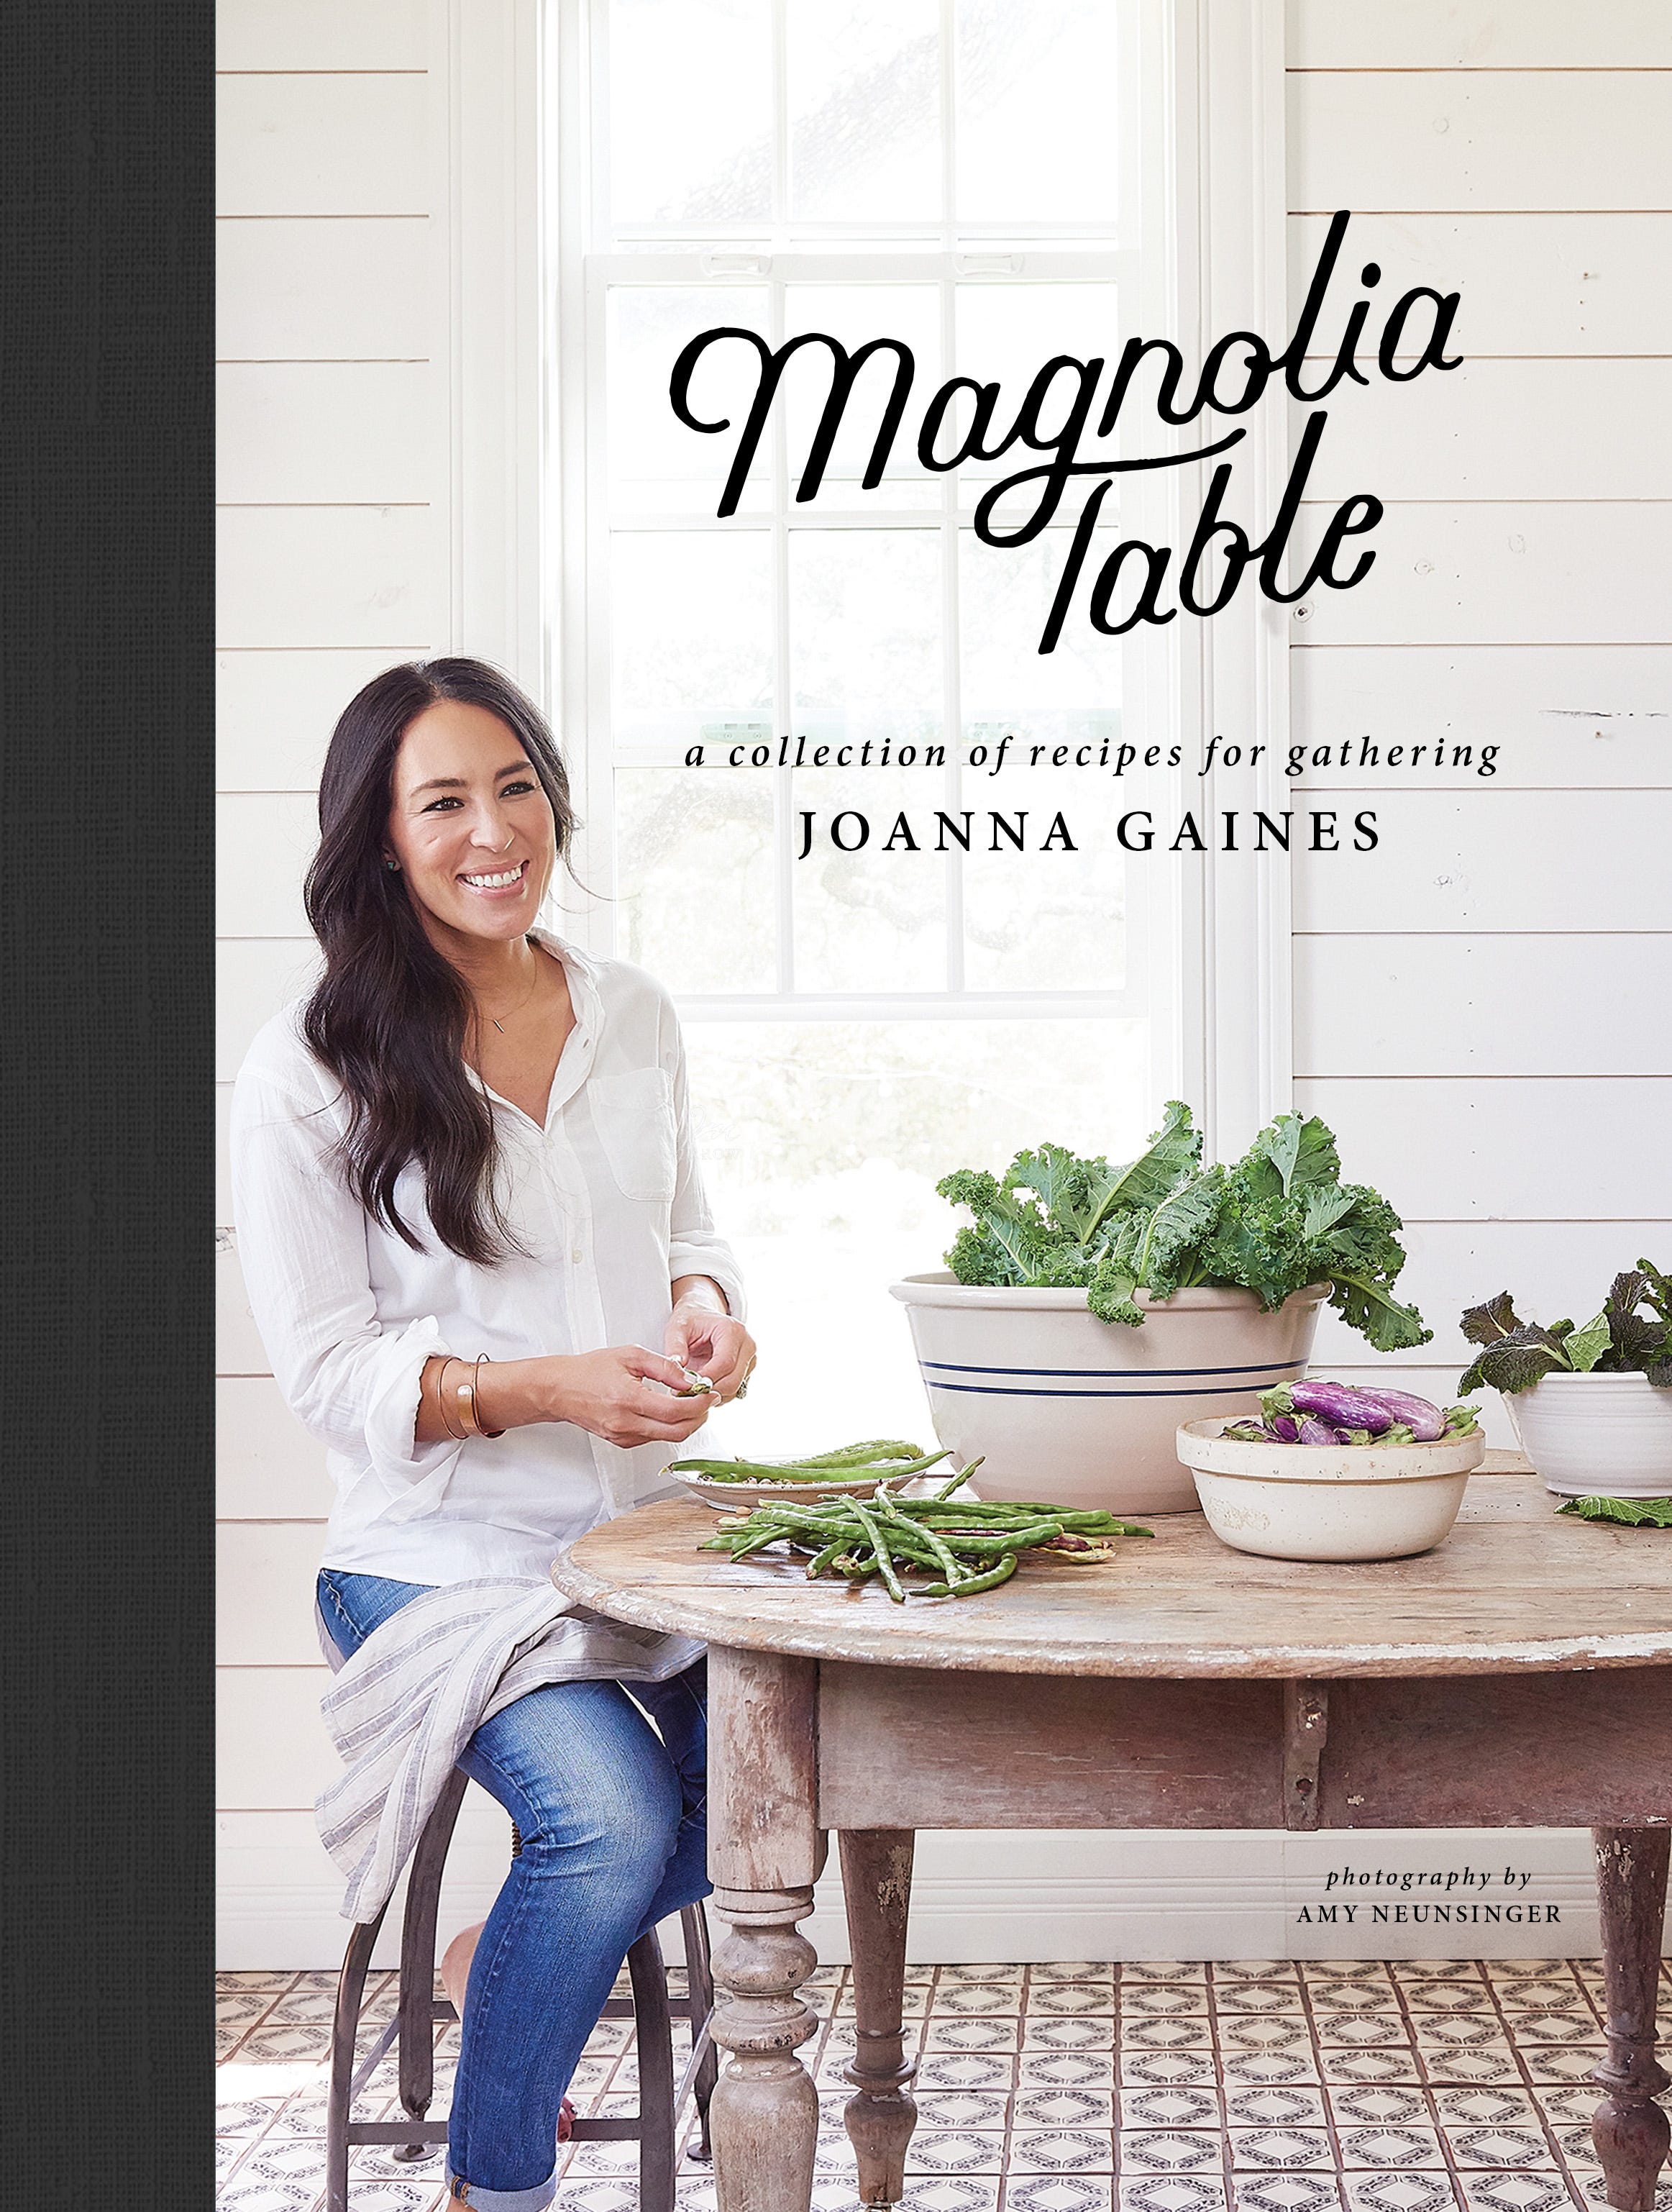 We put Joanna Gaines' new 'Magnolia Table' cookbook to the (taste) test